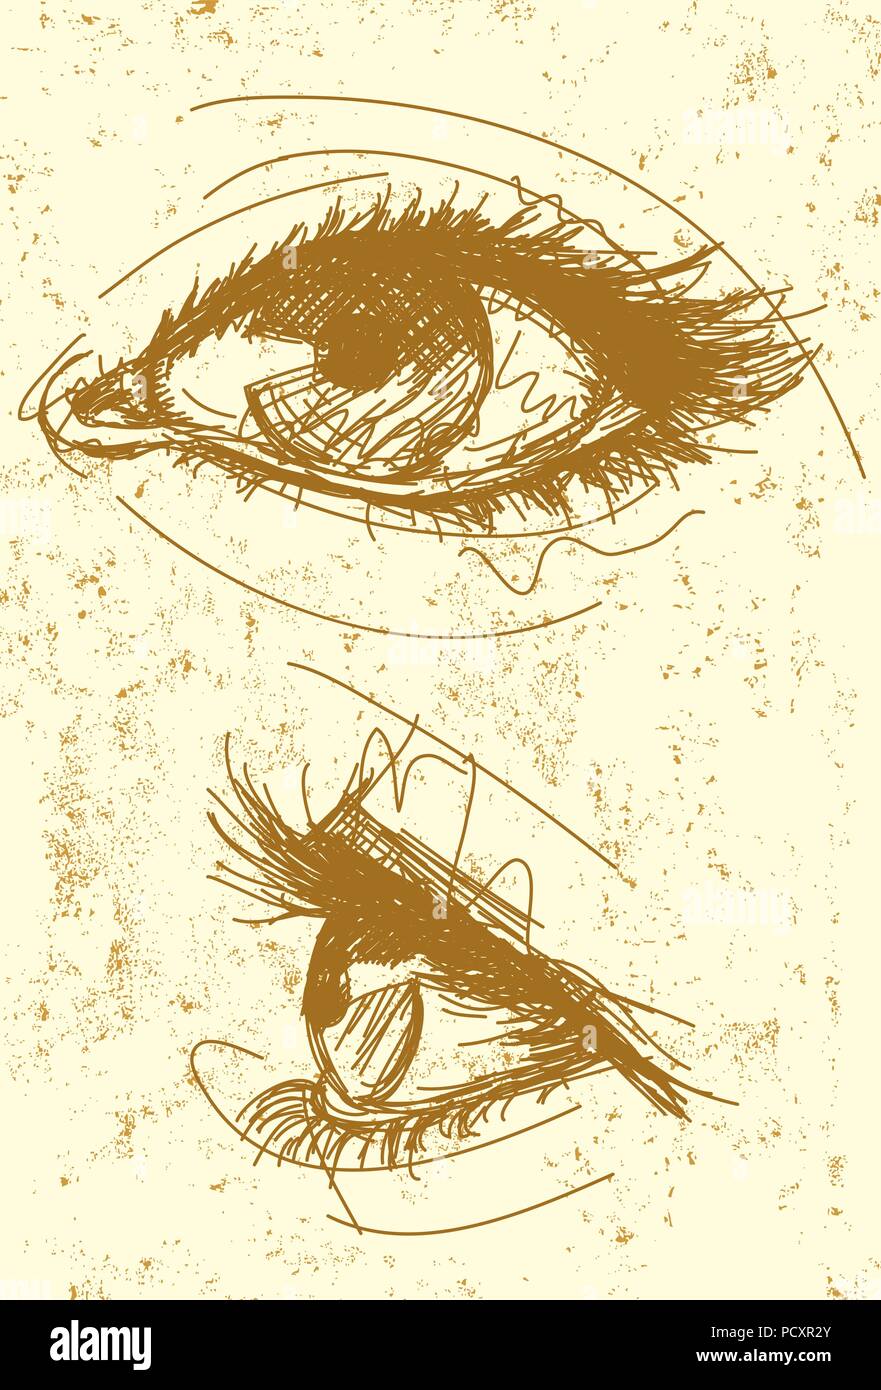 Gli occhi di femmina Sketchy, disegnato a mano occhi femmina un abstract background. Illustrazione Vettoriale